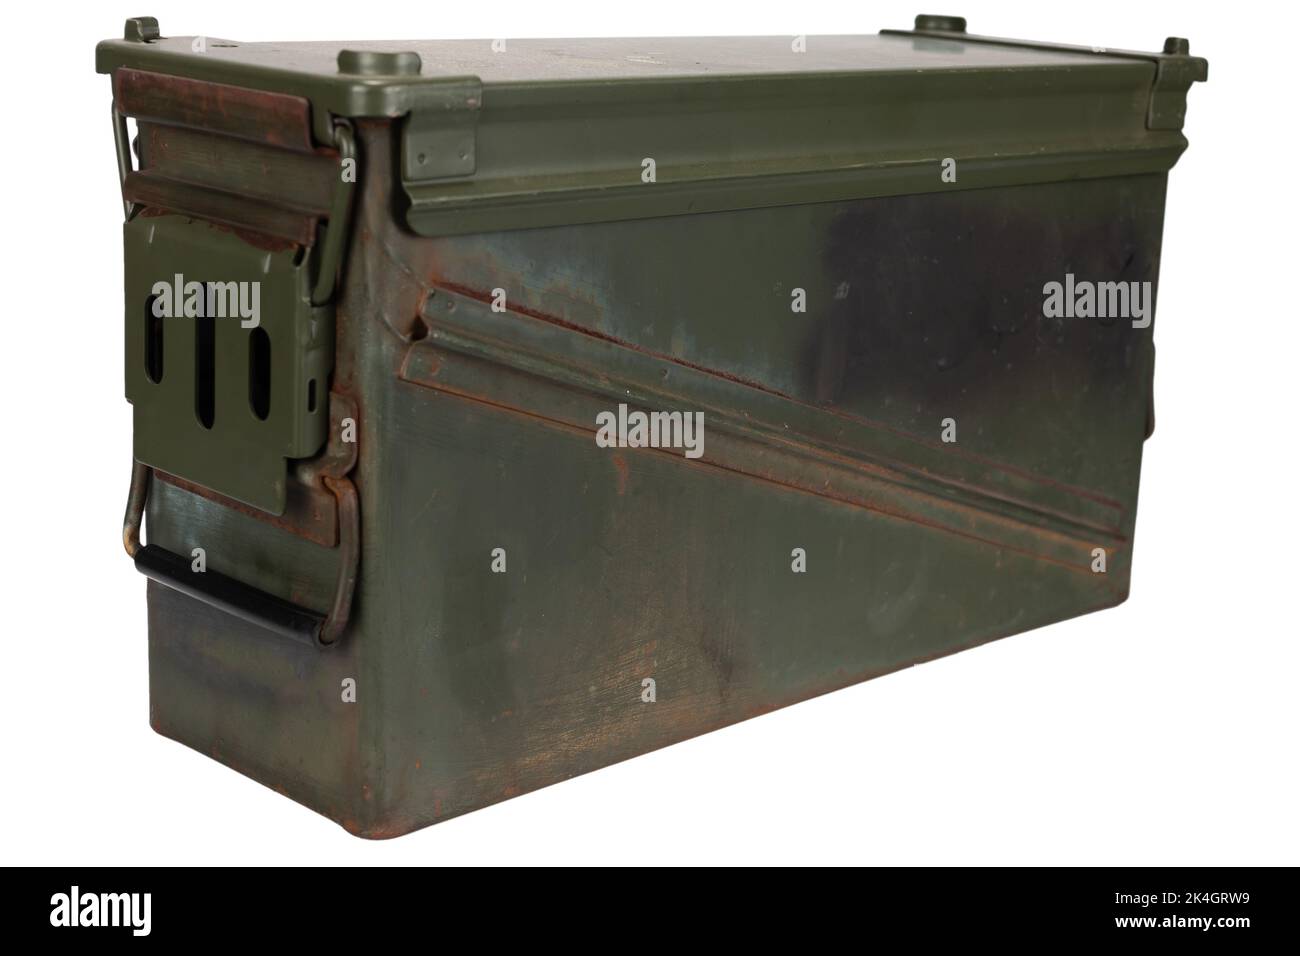 AMMO CAN pour 40mm grenades cartidge isolé sur fond blanc Banque D'Images